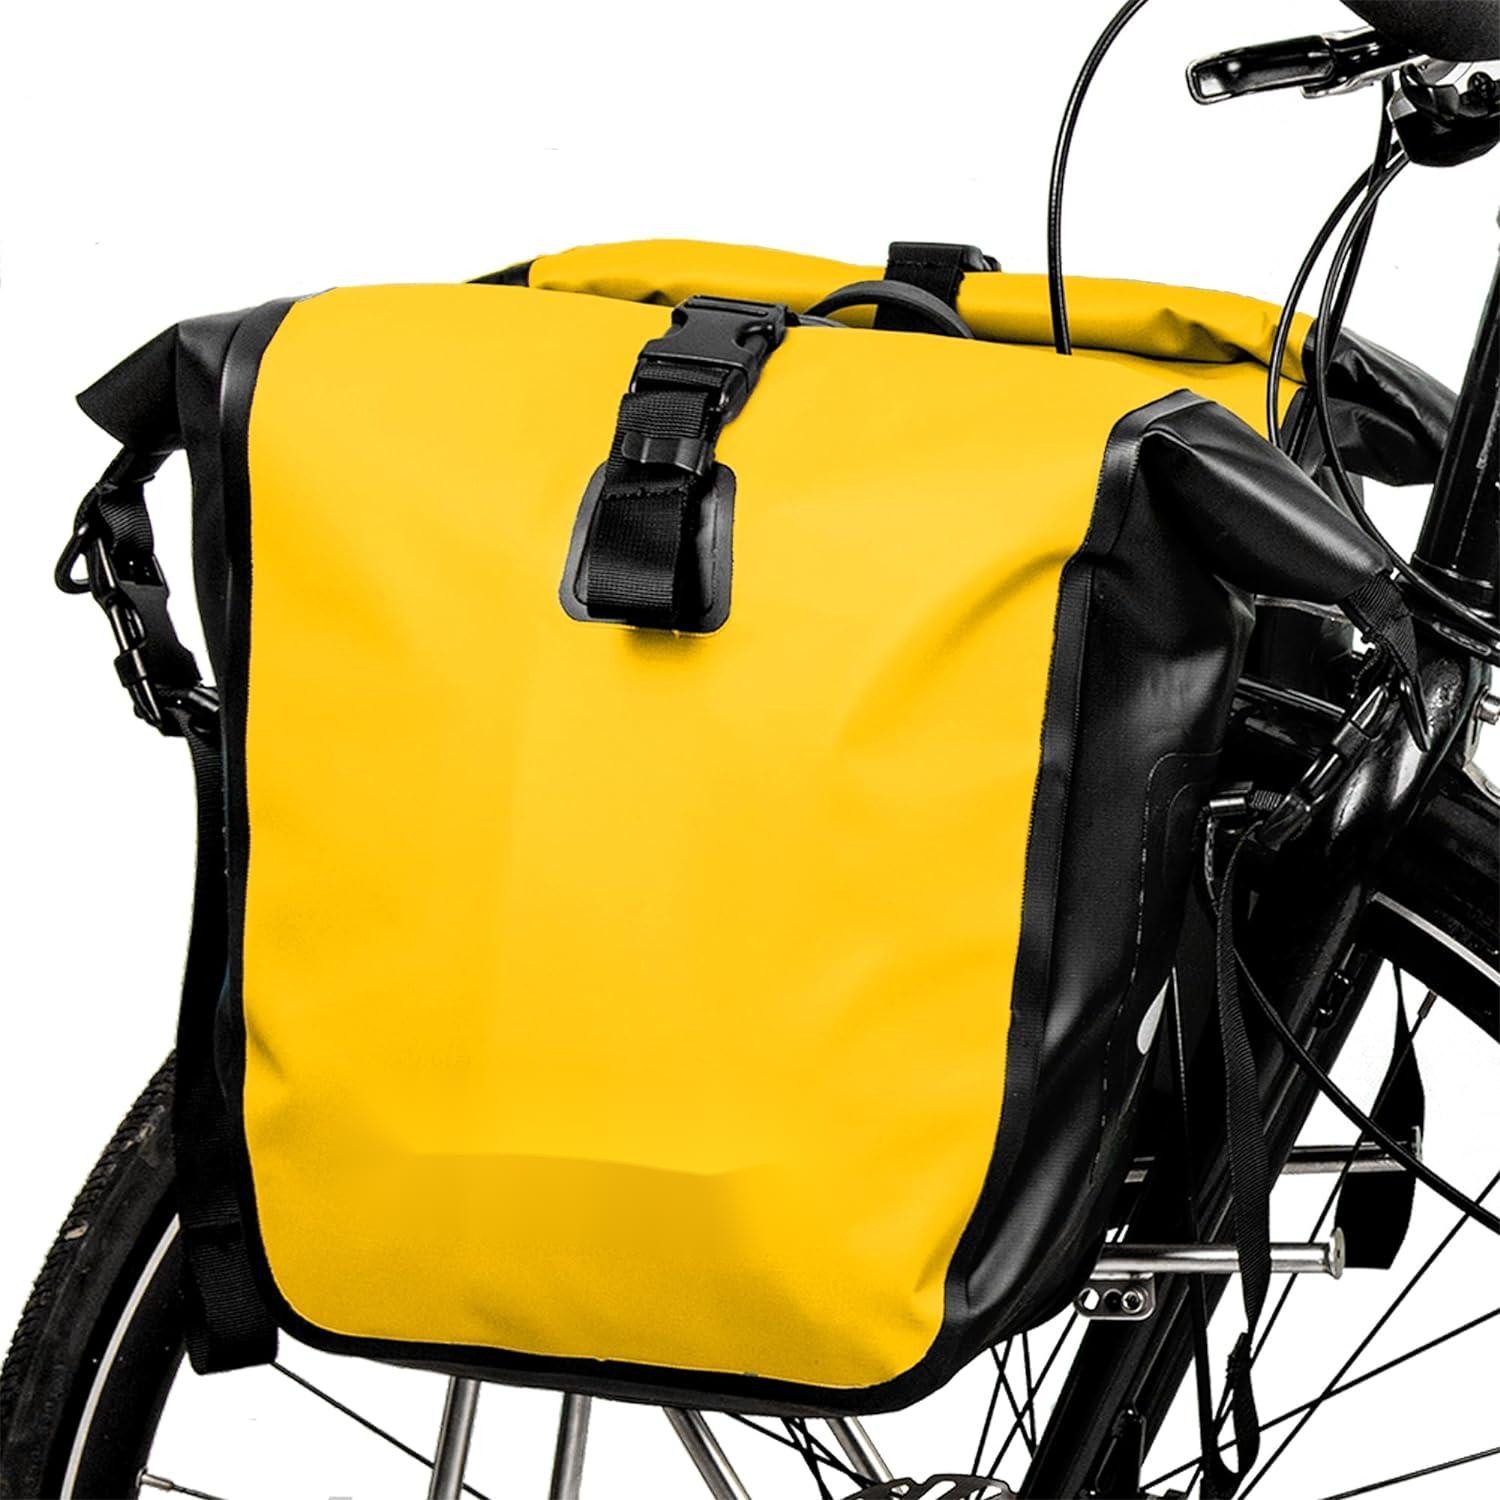 HEYHIPPO Fahrradtasche Wasserdichte Fahrradtasche 15L, Schwarz/Gelb/Grau, Satteltasche, (Kameltasche,Fahrradgepäcktasche mit großer Kapazität), bietet Platz für einen Tablet-Computer,46*46*24cm